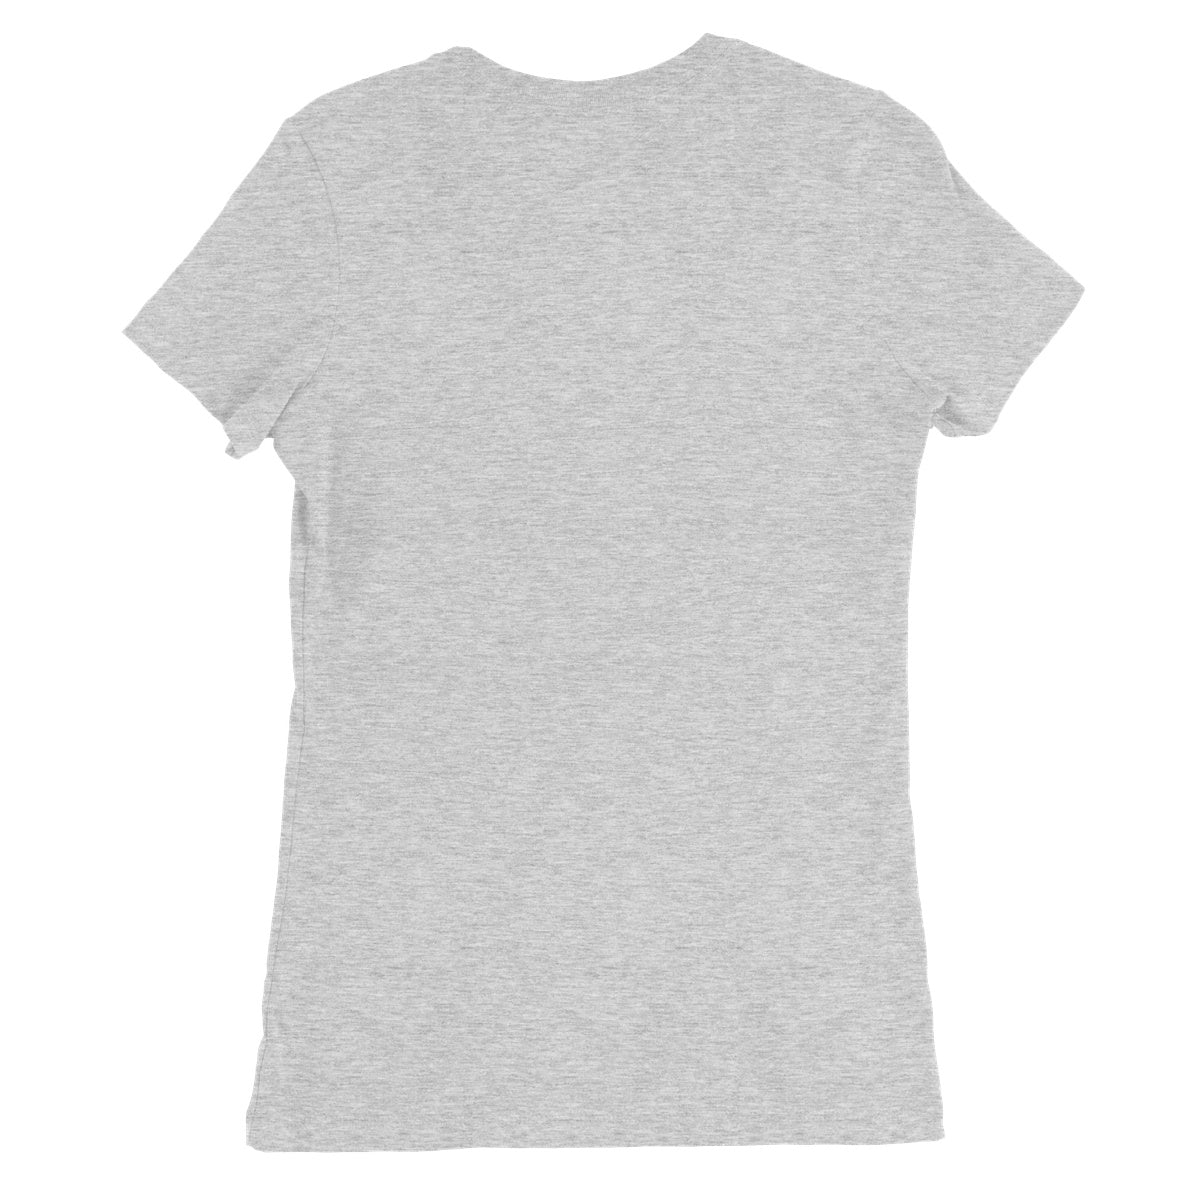 Five Cubes, Summer Women's Favourite T-Shirt